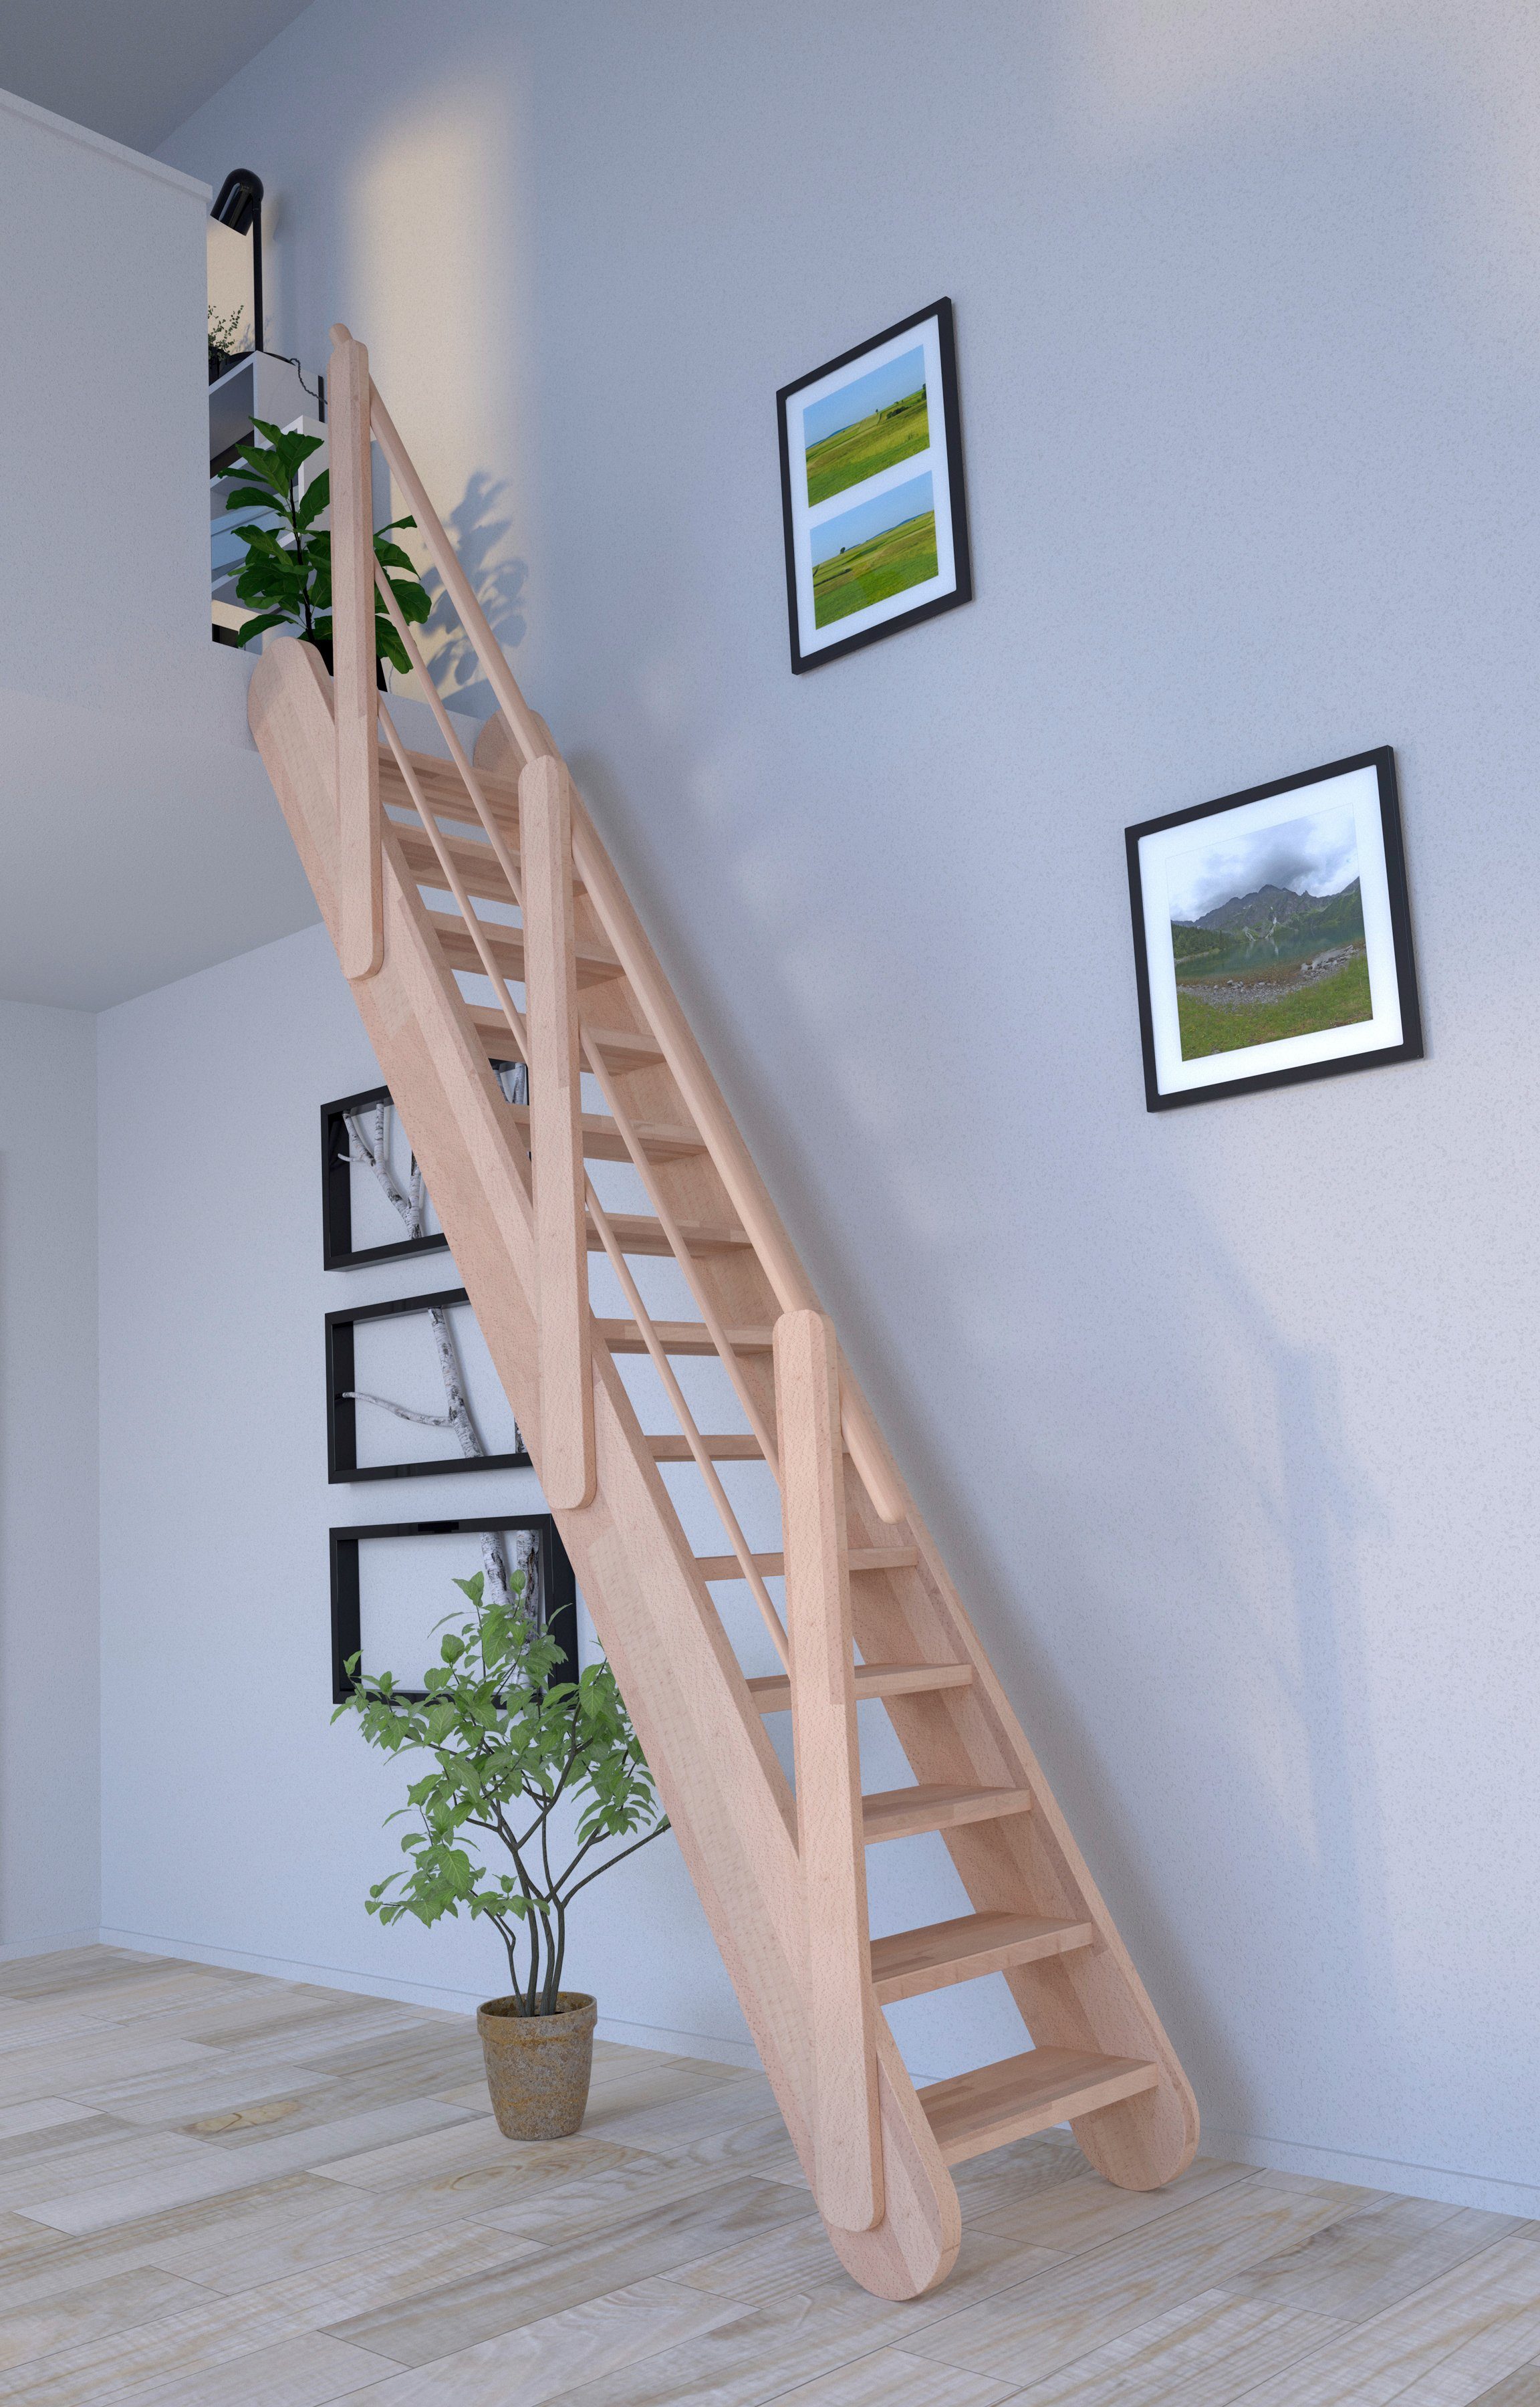 Design offen, Massivholz Stufen Raumspartreppe Holz-Holz Wangenteile Starwood Samos, Durchgehende Geländer,